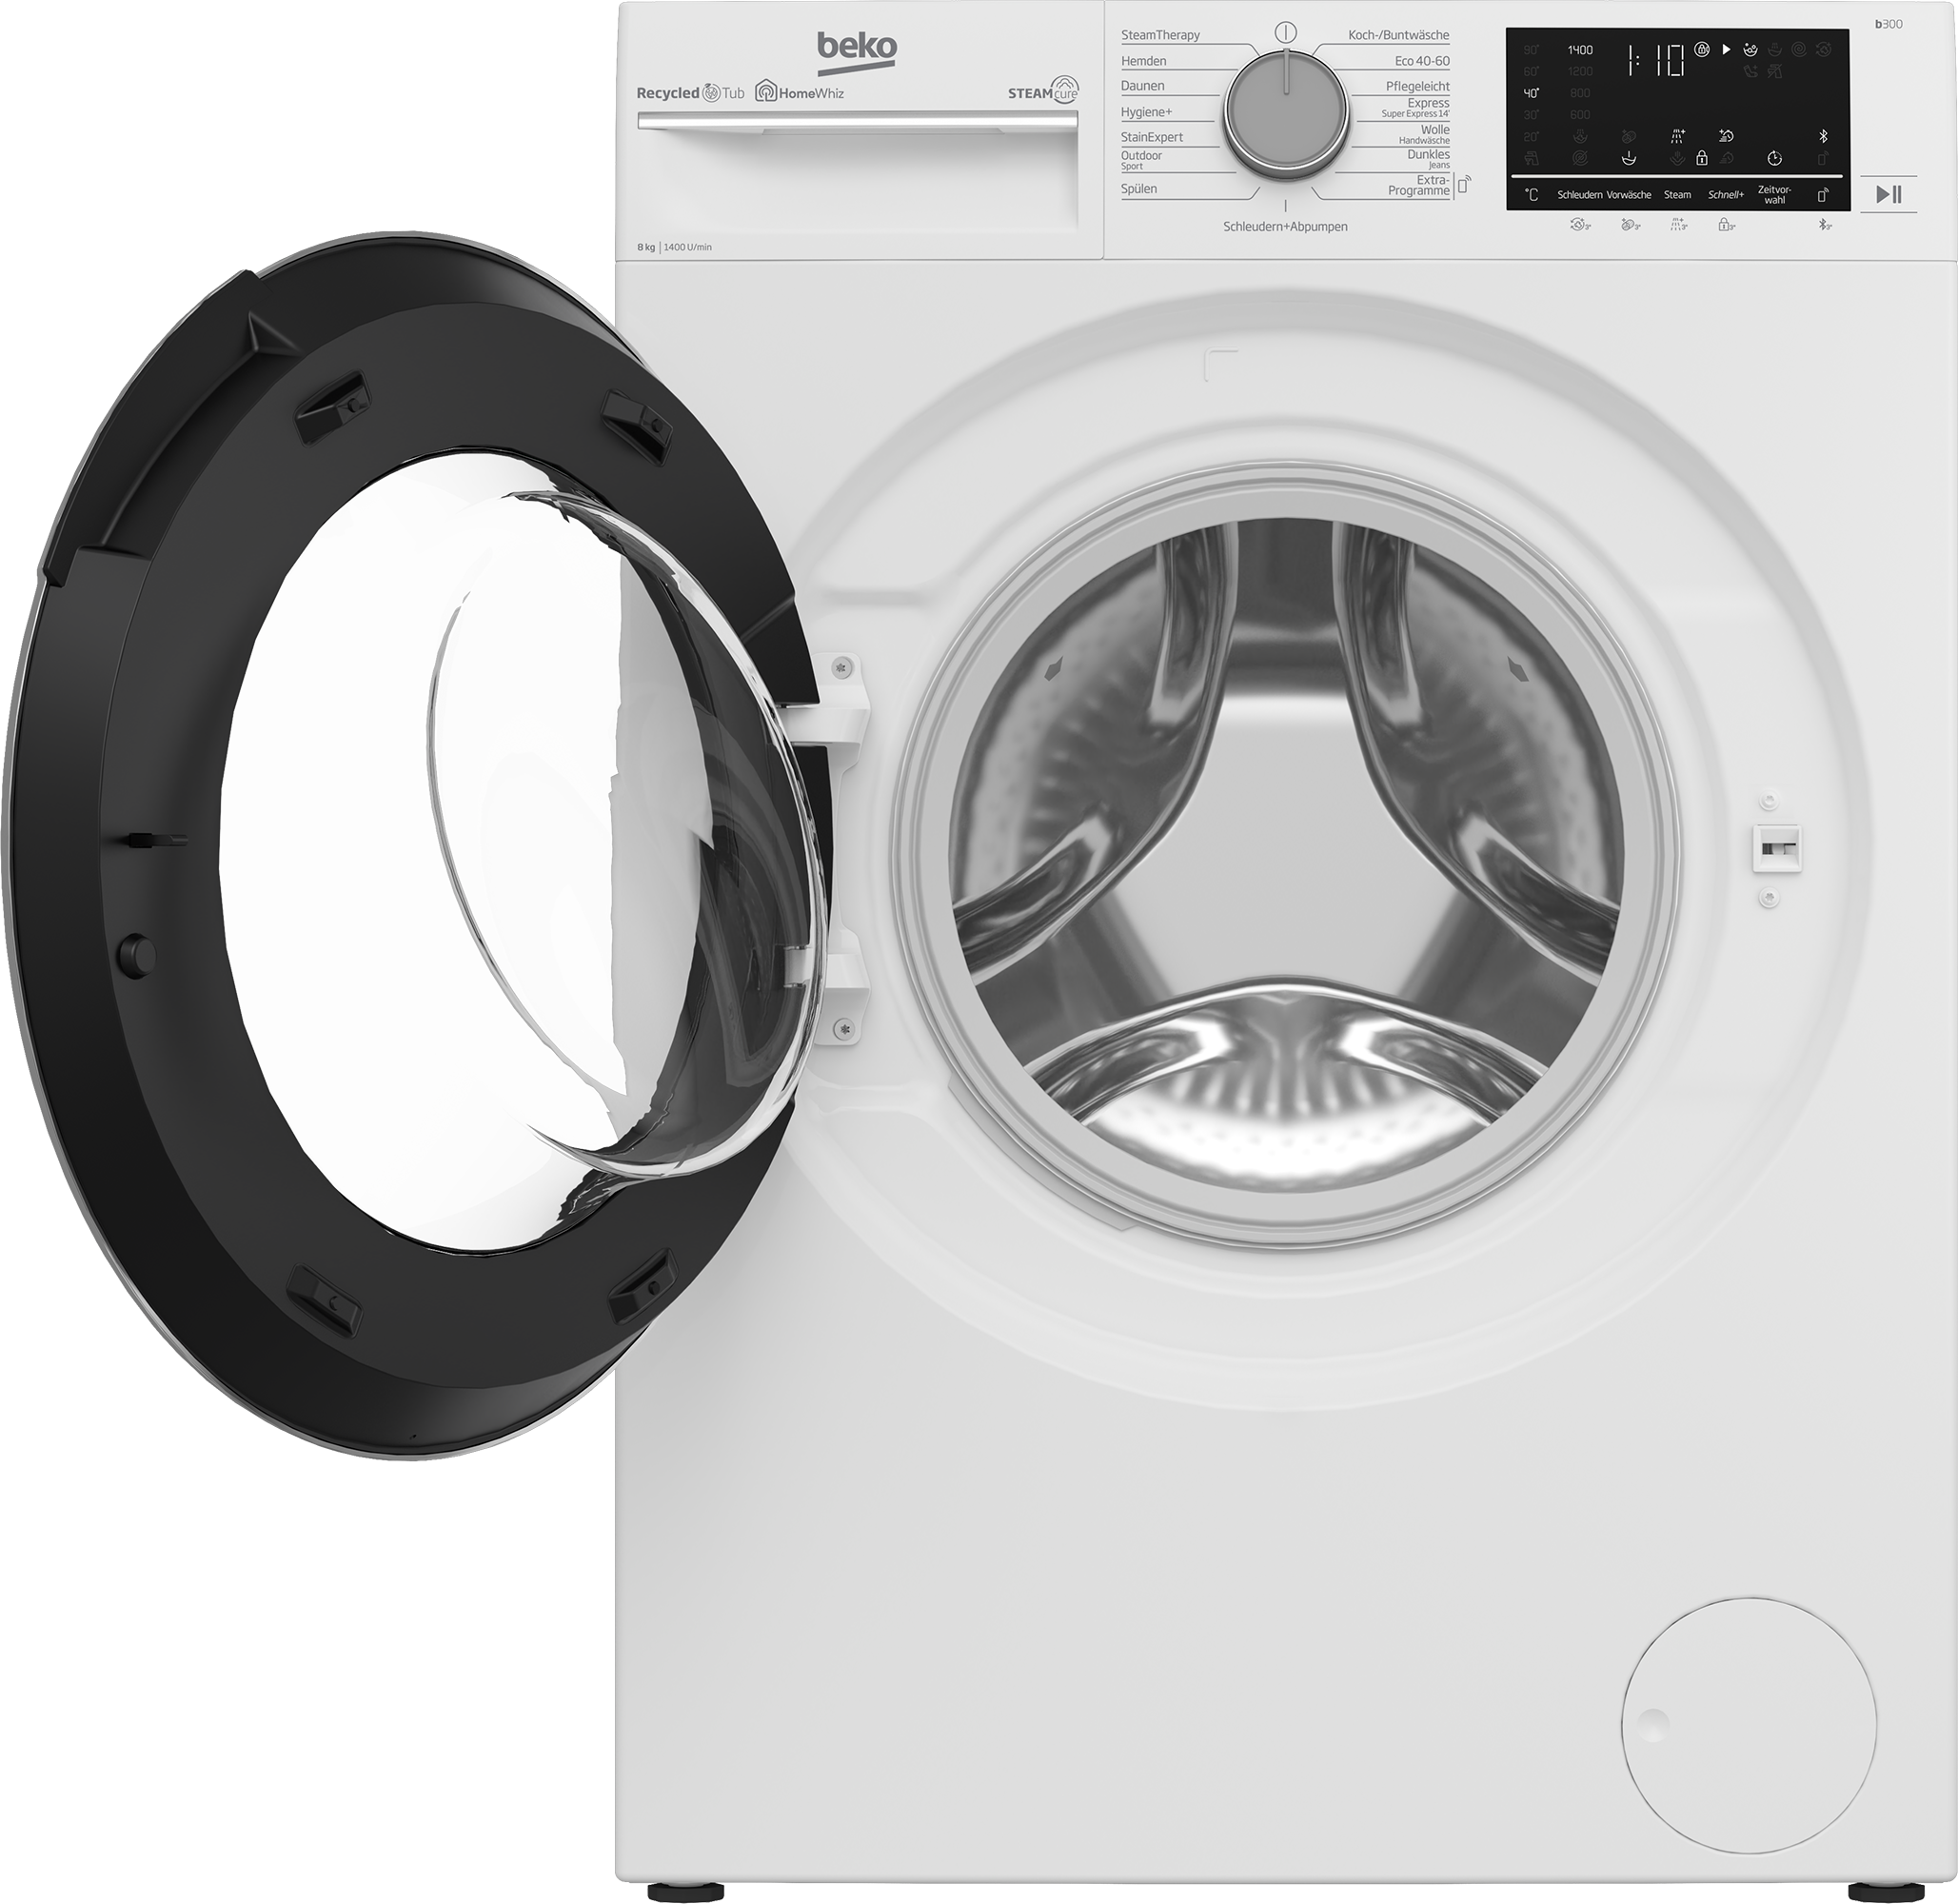 BEKO Waschmaschine, b300, B3WFU59415W2, 9 kg, 1400 U/min, SteamCure - 99%  allergenfrei online kaufen